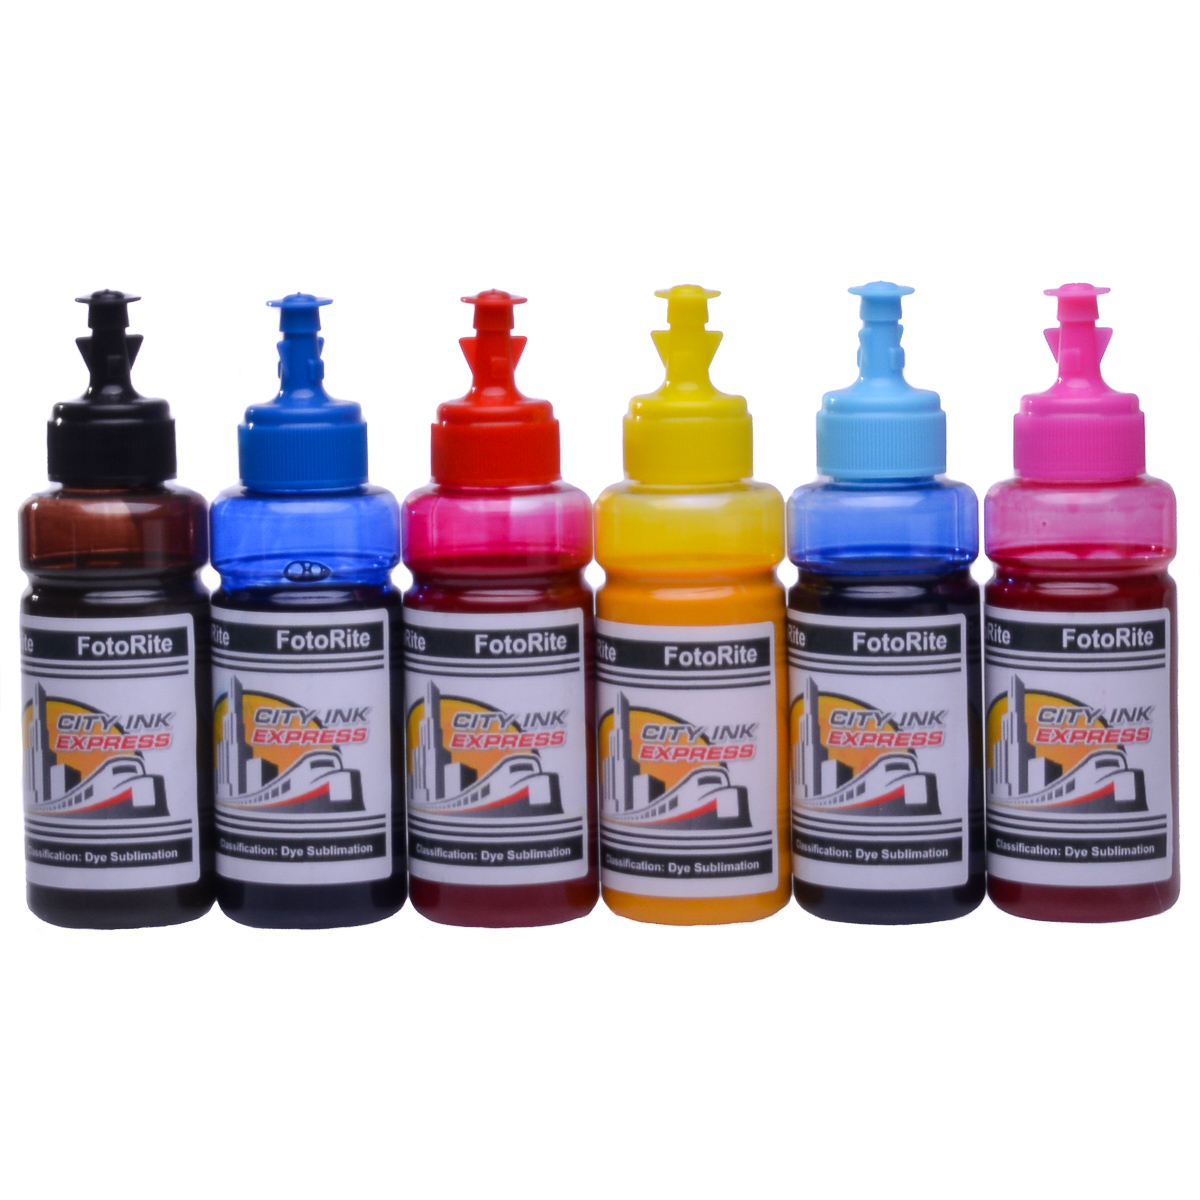 Dye Sublimation Ink Refill Set Fits Epson Ecotank Range Free Custom Icc Profile Ebay 8311